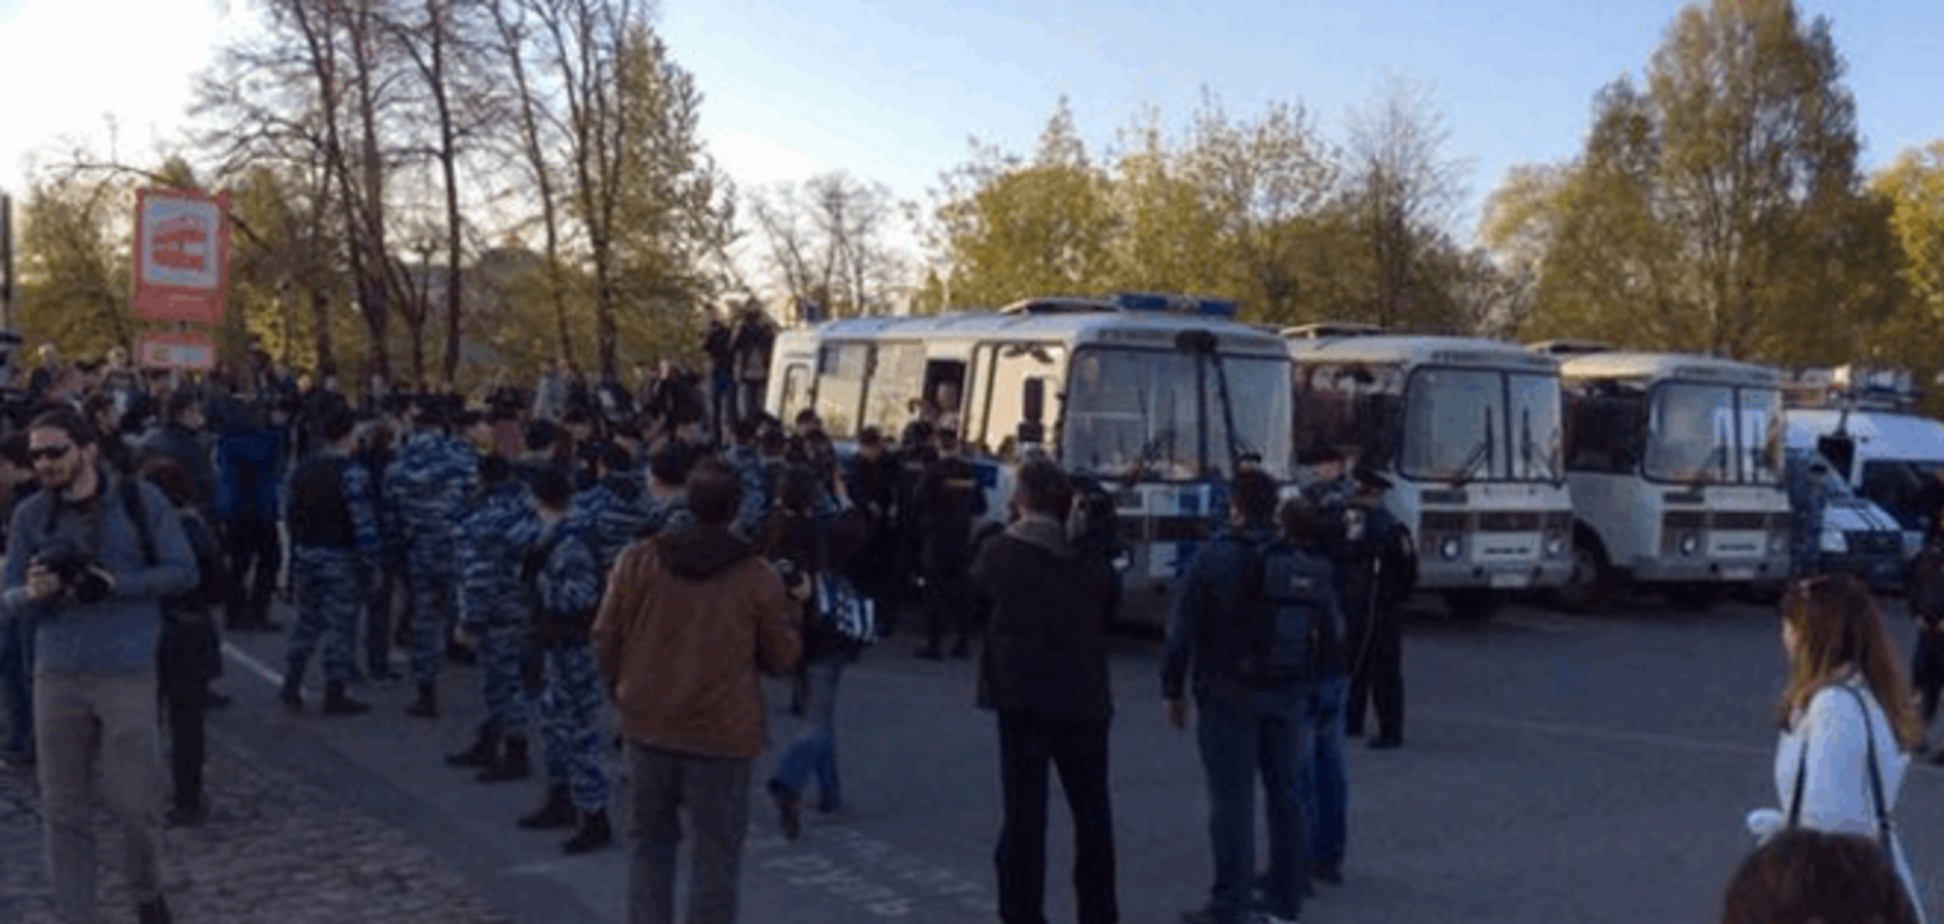 Річниця 'Болотної справи': у Москві 'пакують' в автозаки активістів - фото і відео